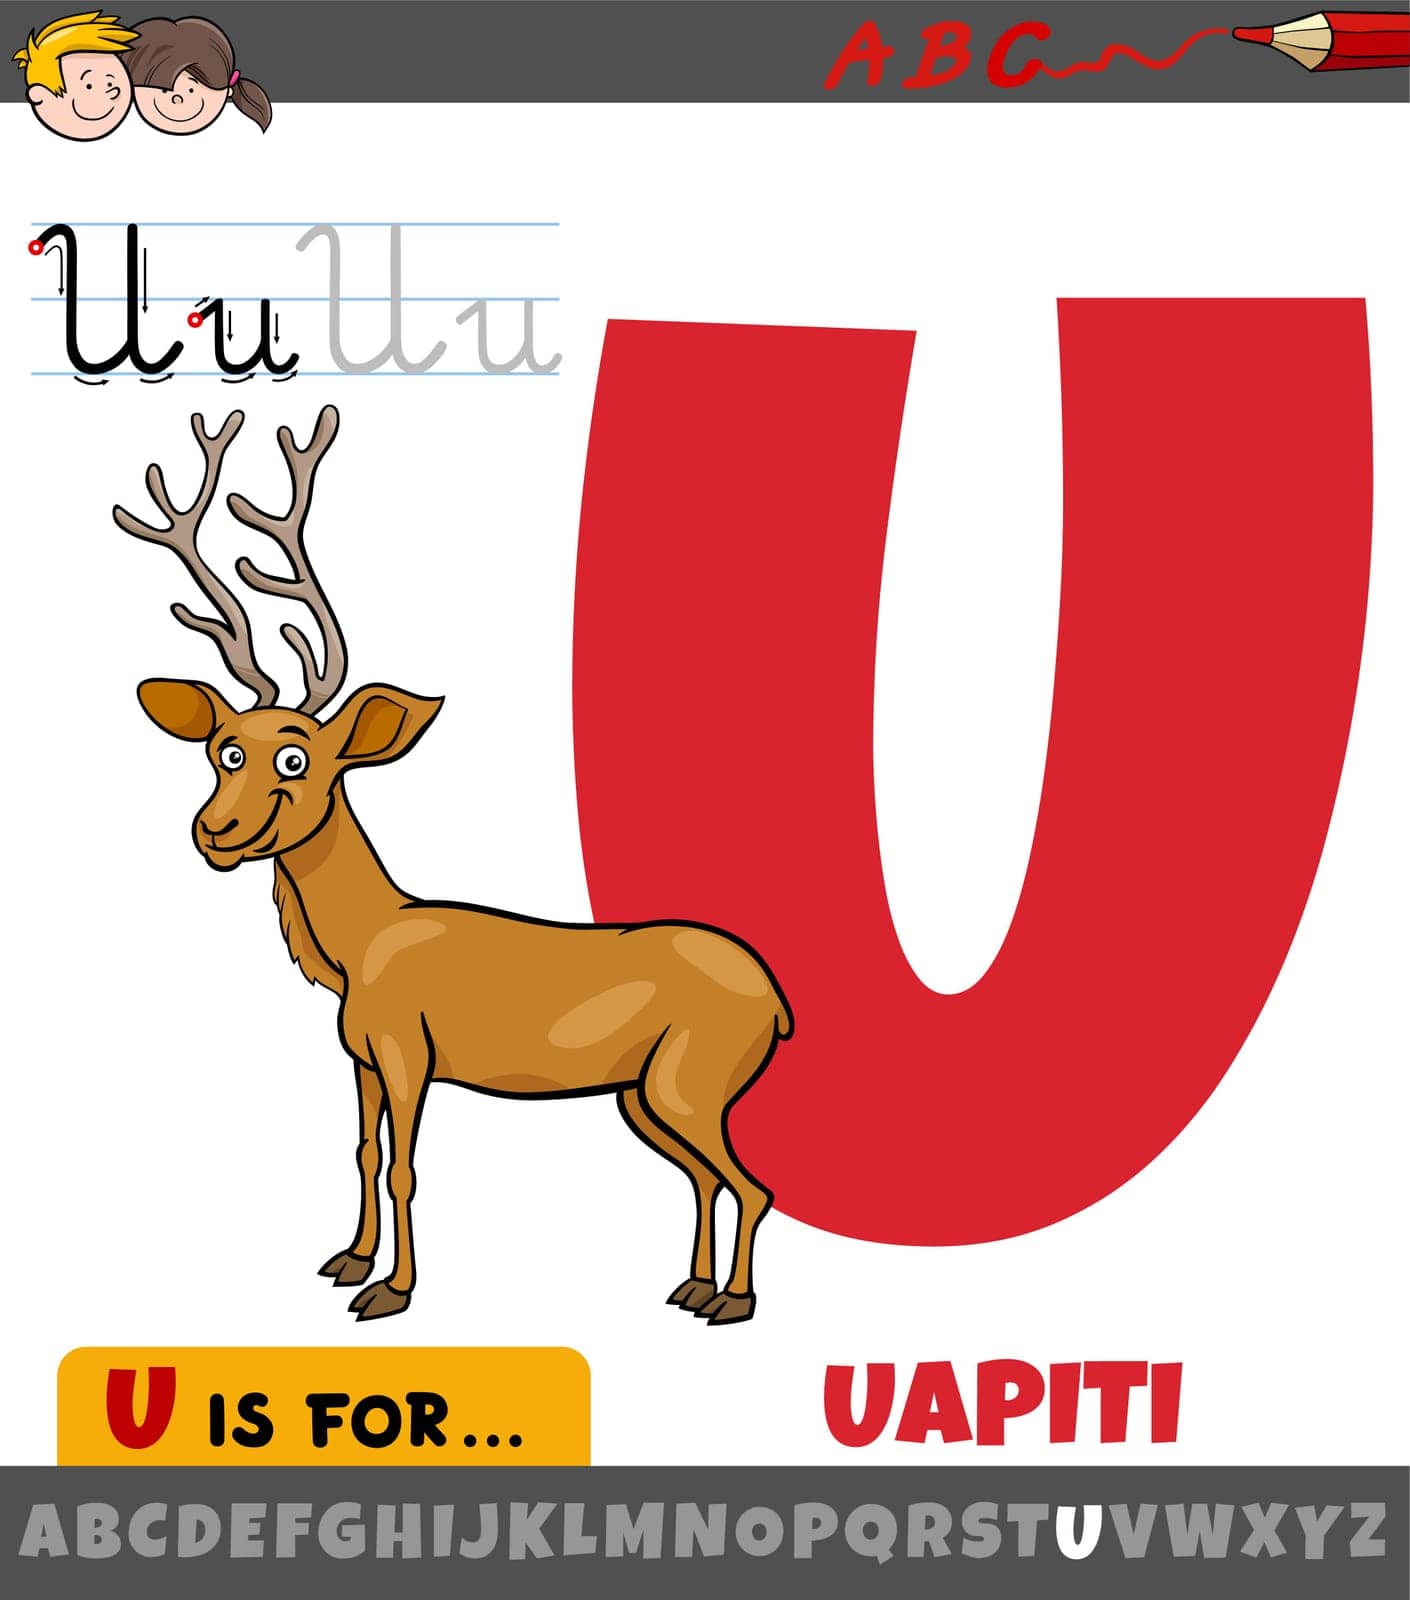 letter U from alphabet with cartoon uapiti animal character by izakowski